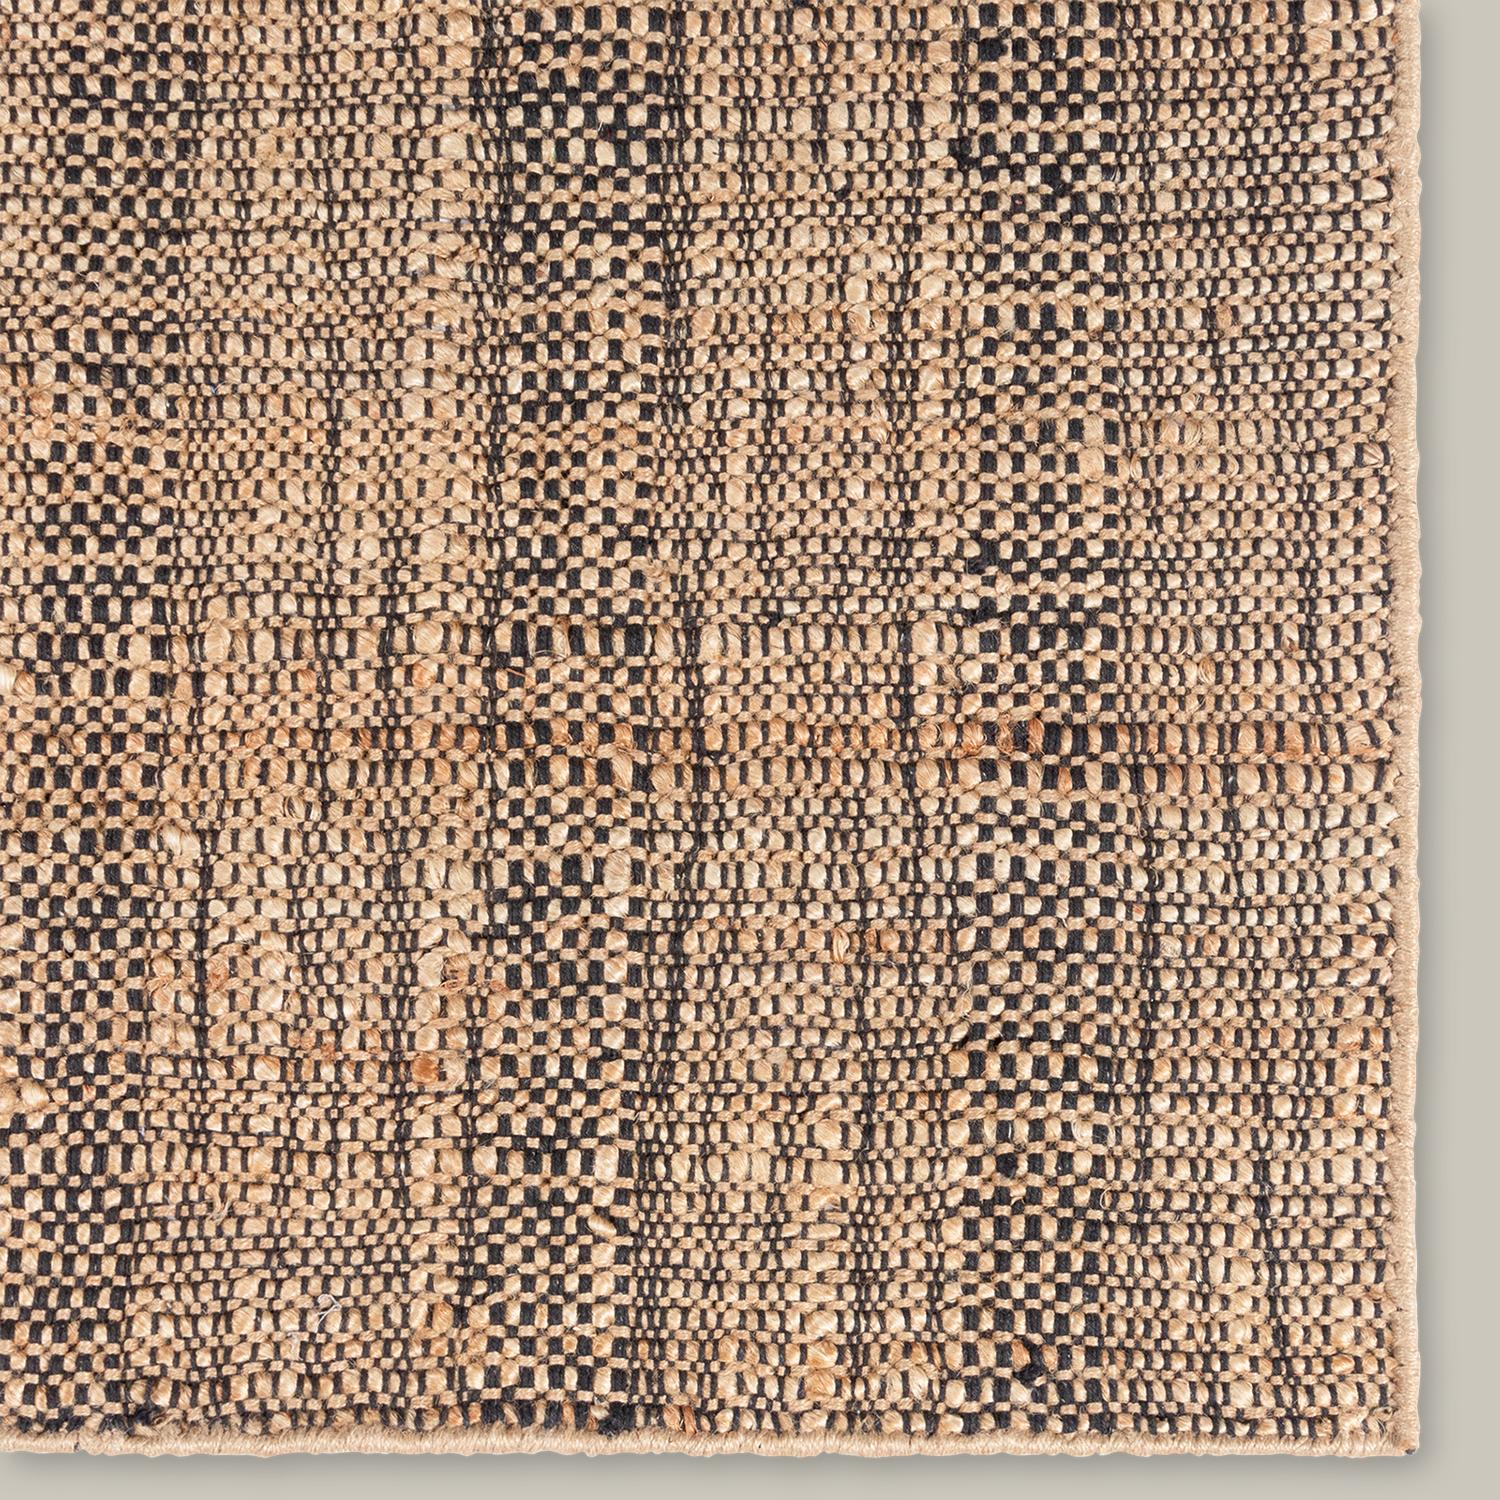 Die Qualität des Linienmusters zeichnet die Moghar-Kollektion aus. Das handgewebte Jute-Flachgewebe mit seinen subtilen Farbabstufungen ist ein edles Basic. Die verschlungenen Linien und die unregelmäßige Textur haben eine sehr organische,